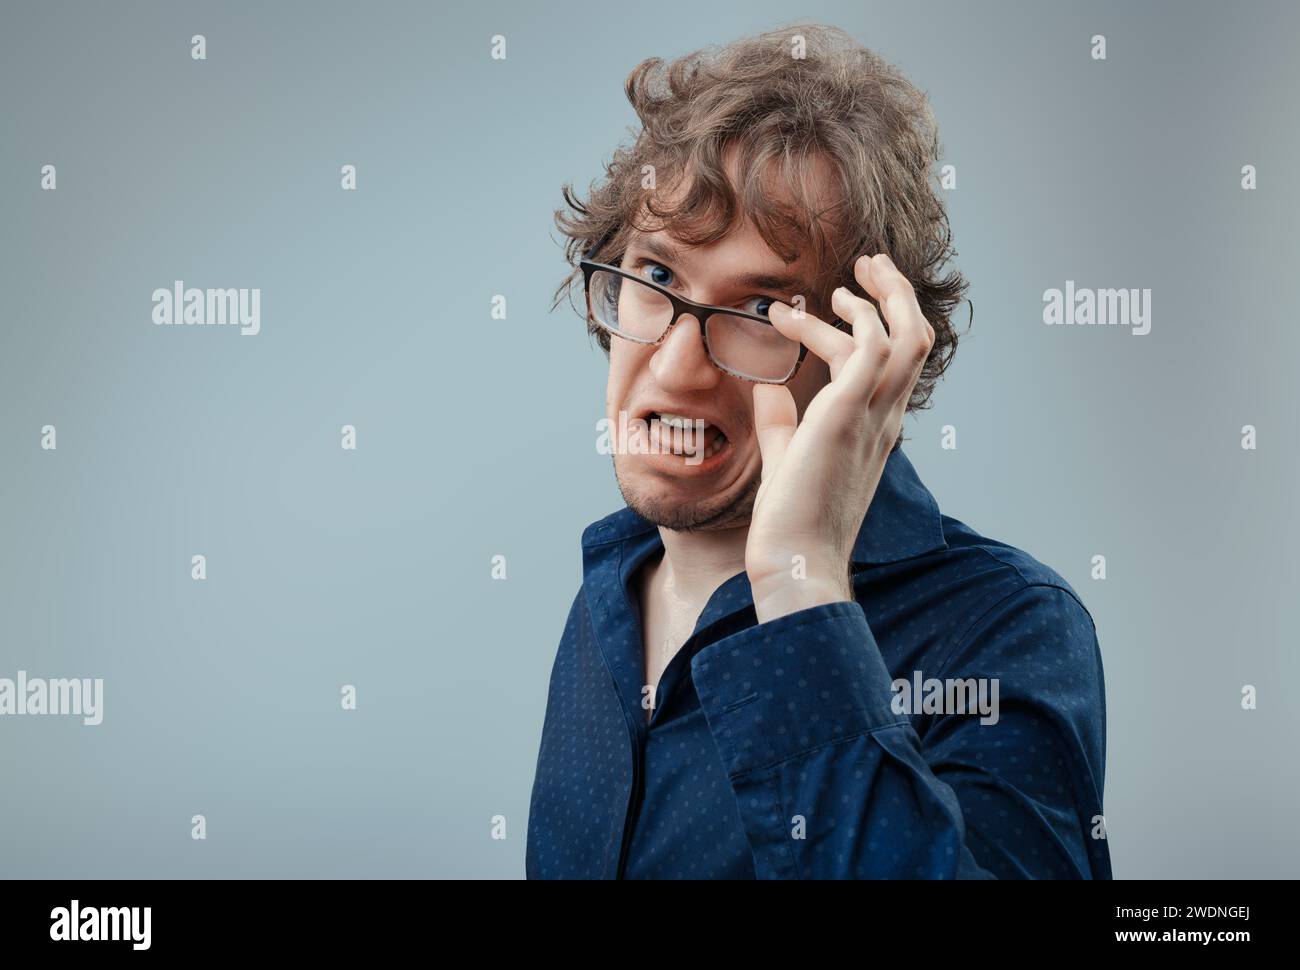 Mann mit Brillengrimaces, ein Anblick von Ekel, der sich als Reaktion auf eine unangenehme Situation manifestiert Stockfoto